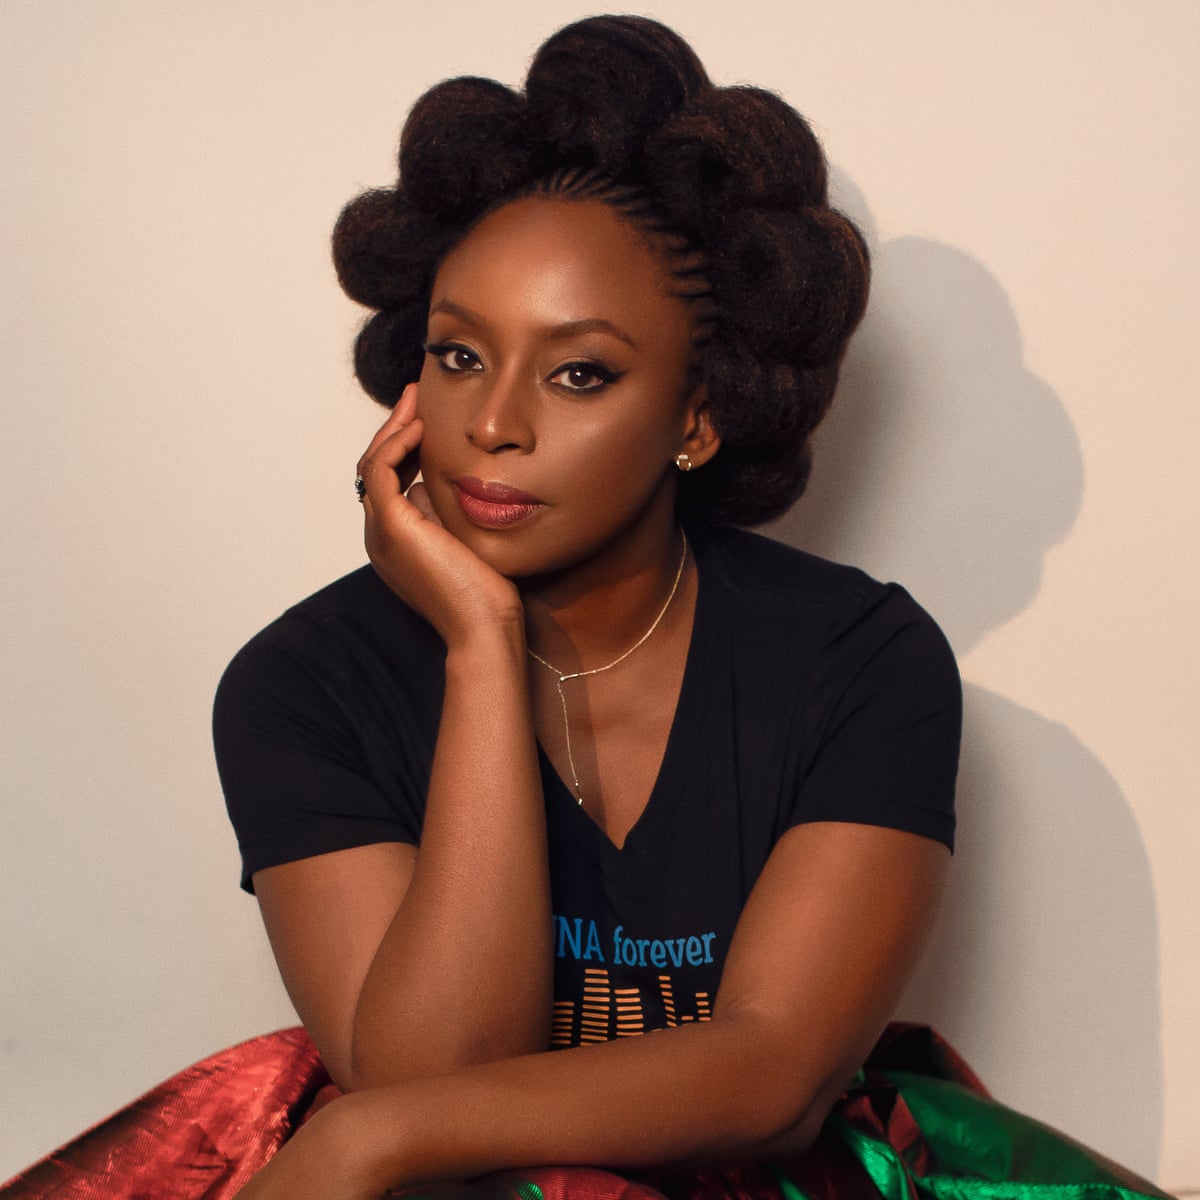 Chimamanda Adichie stopped